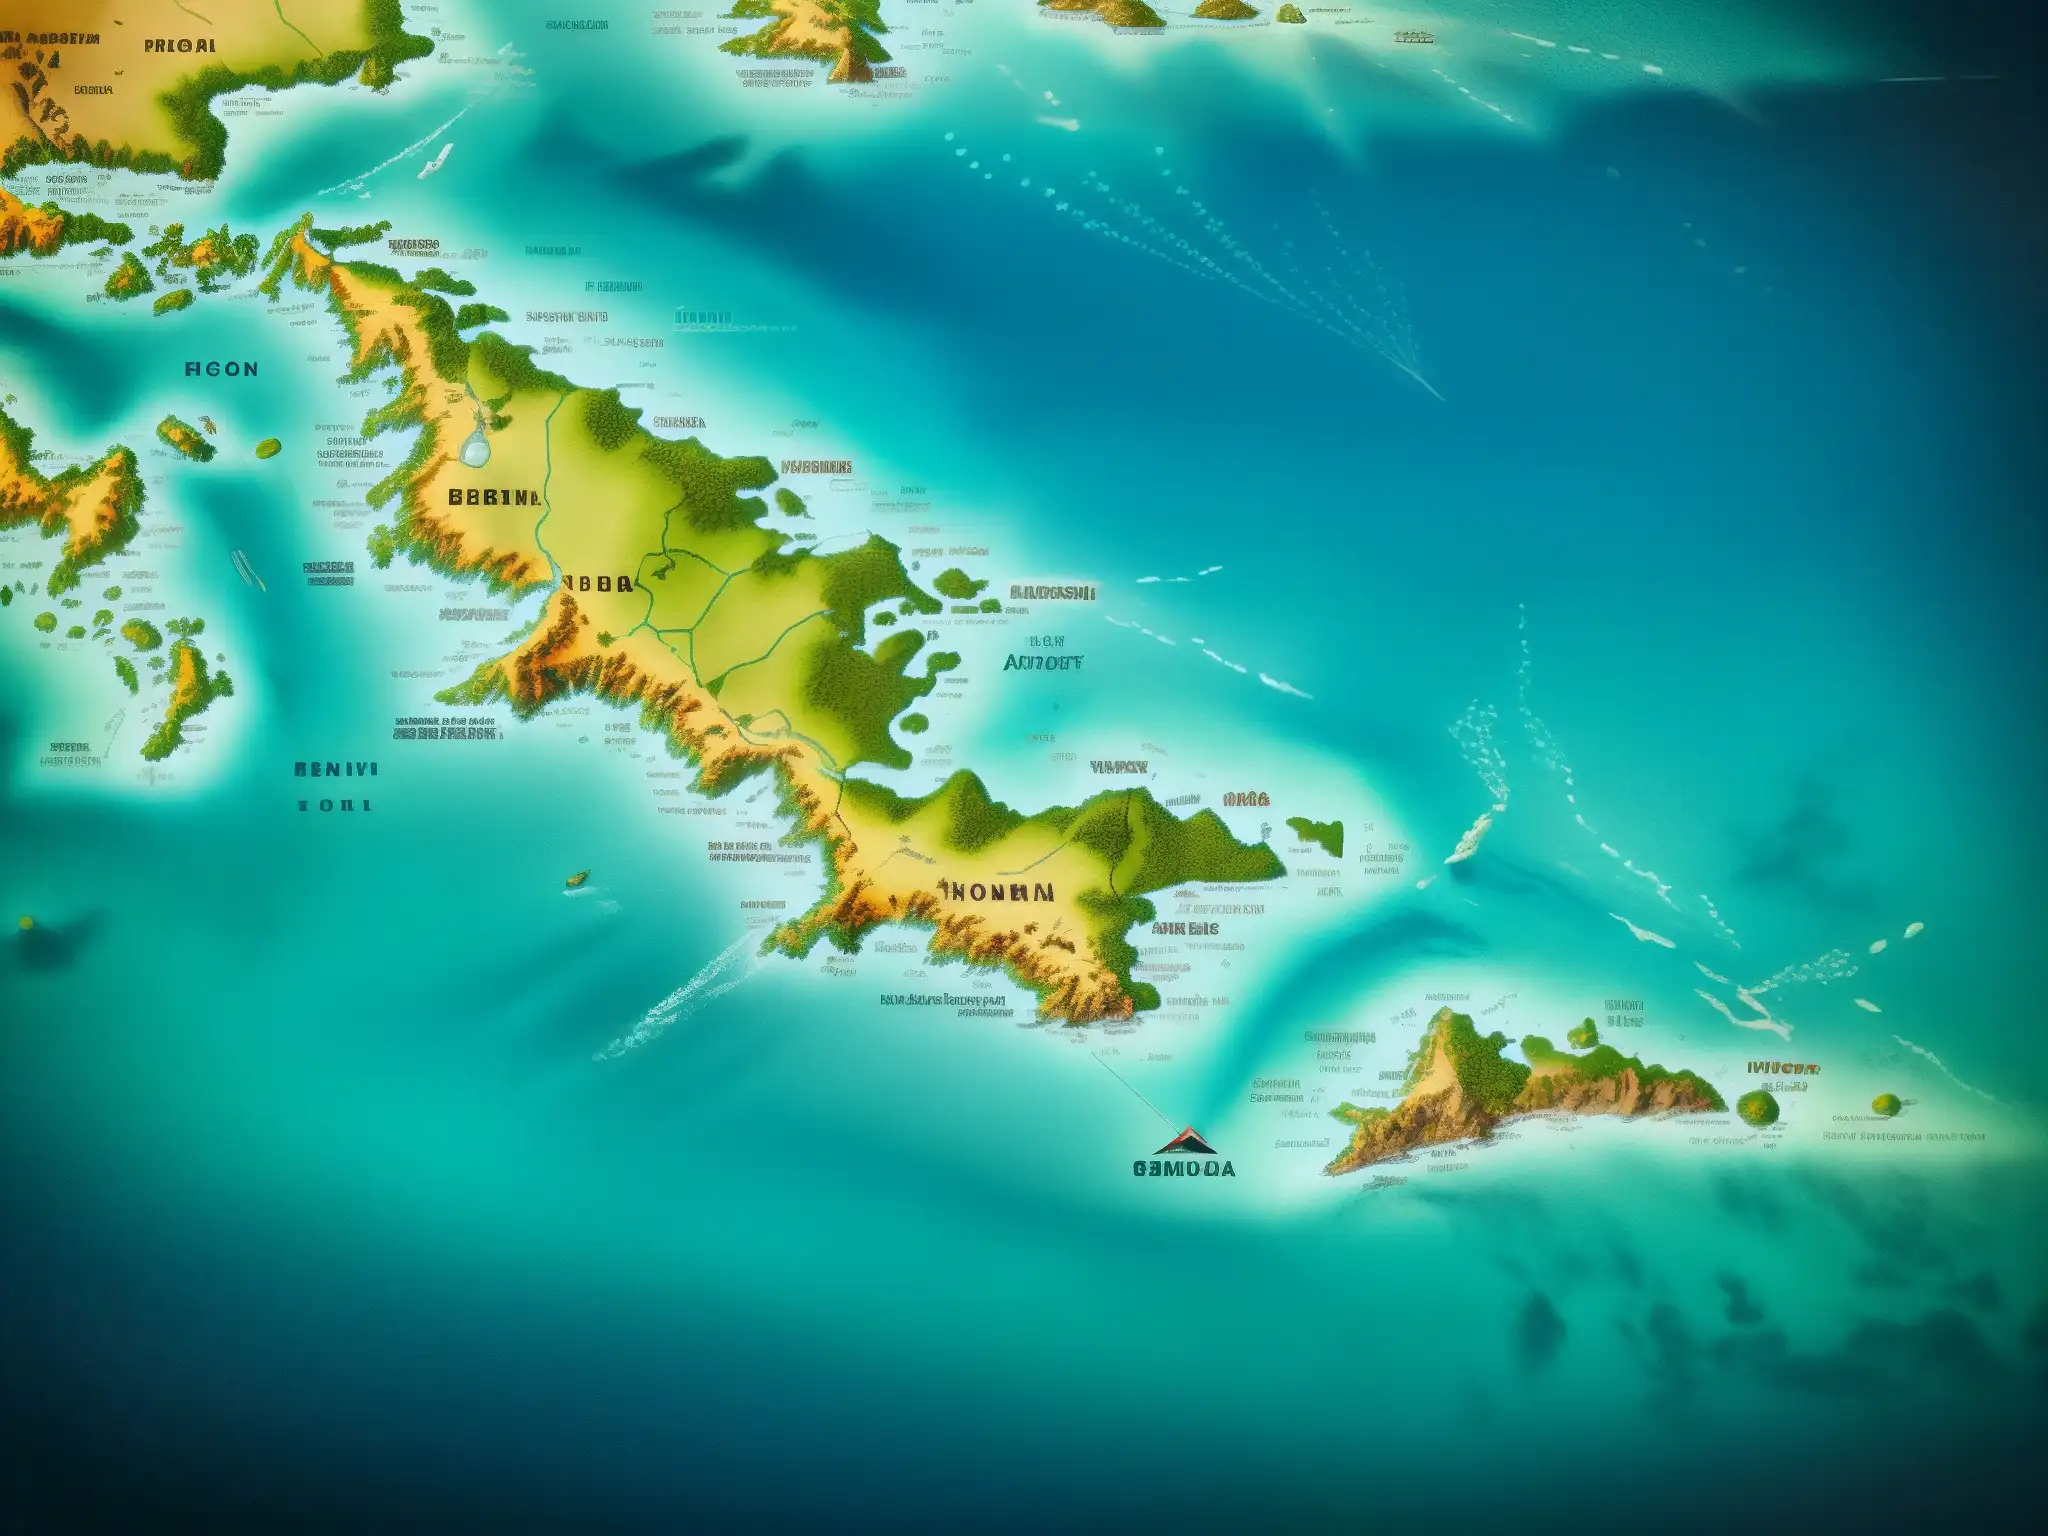 Un mapa vintage del Triángulo de las Bermudas revela su enigma y misterio, con detalles intrincados del océano y las islas circundantes